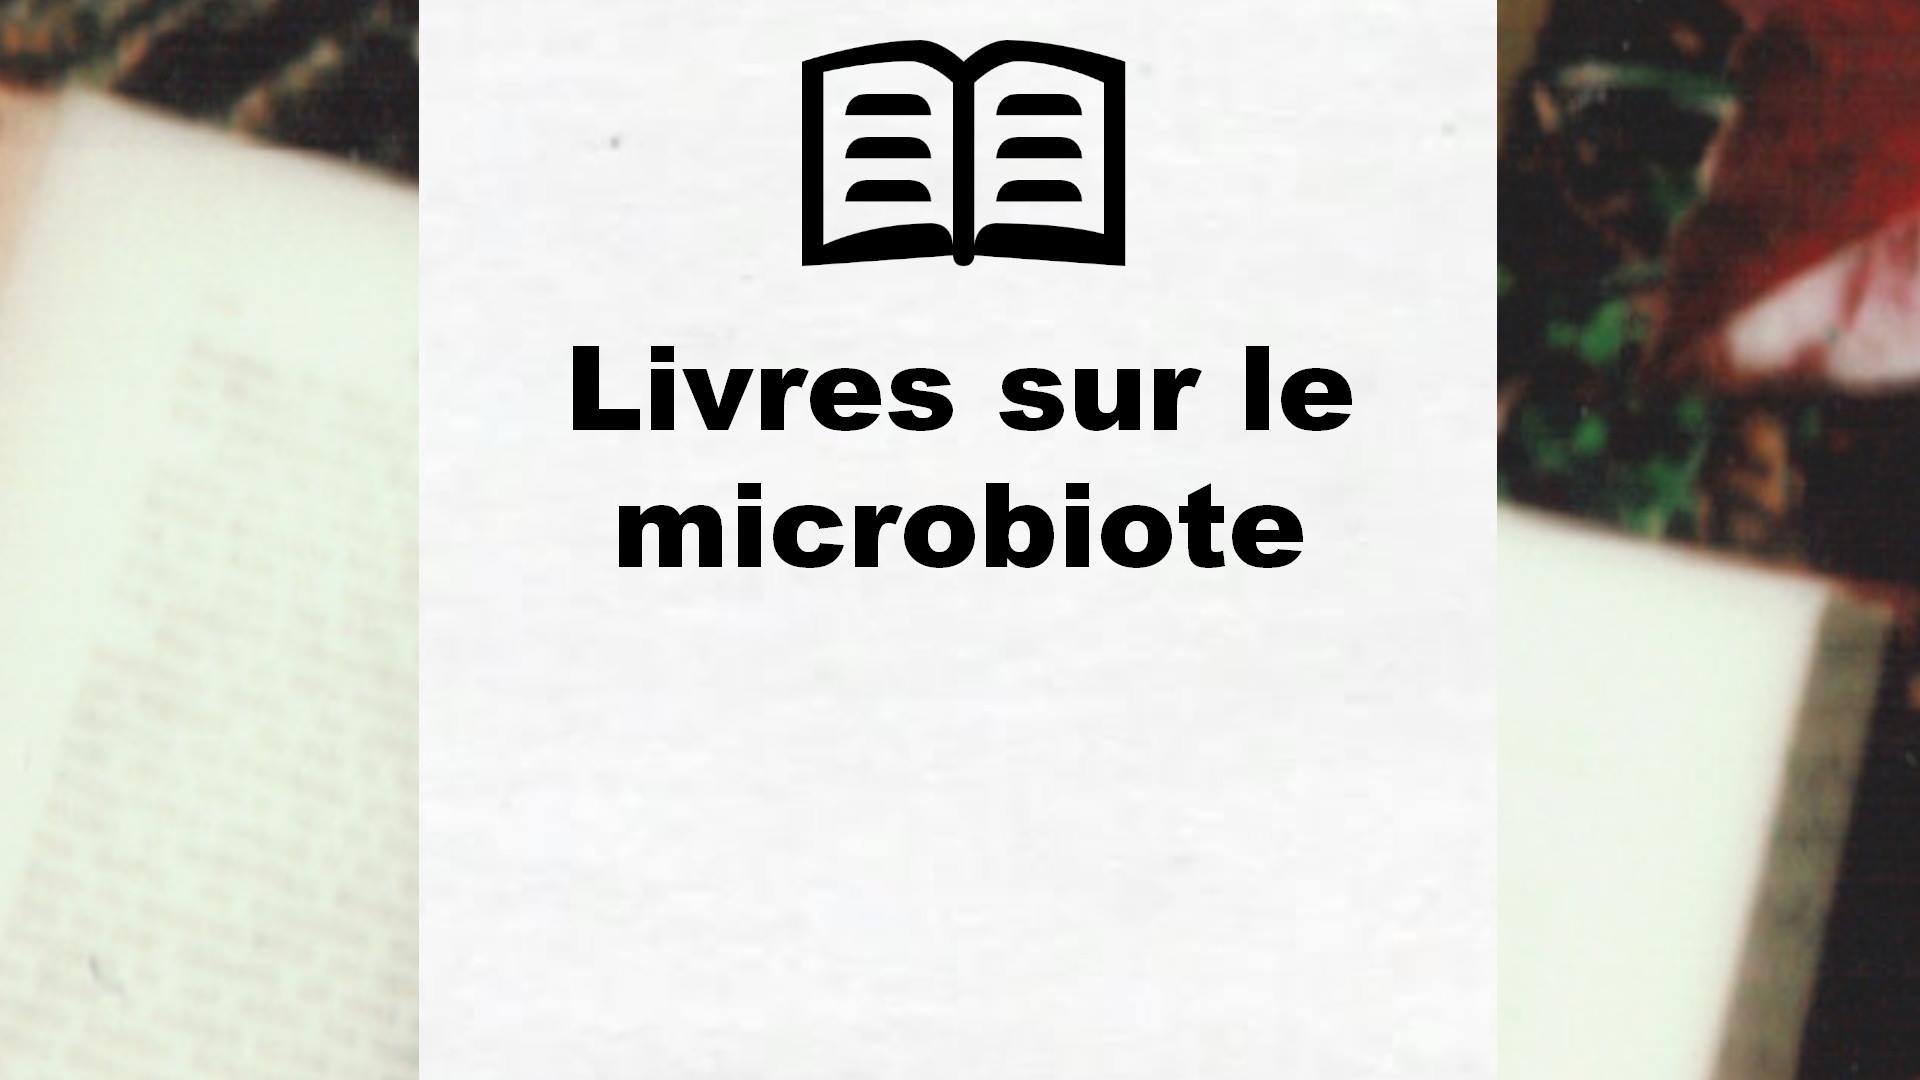 Livres sur le microbiote